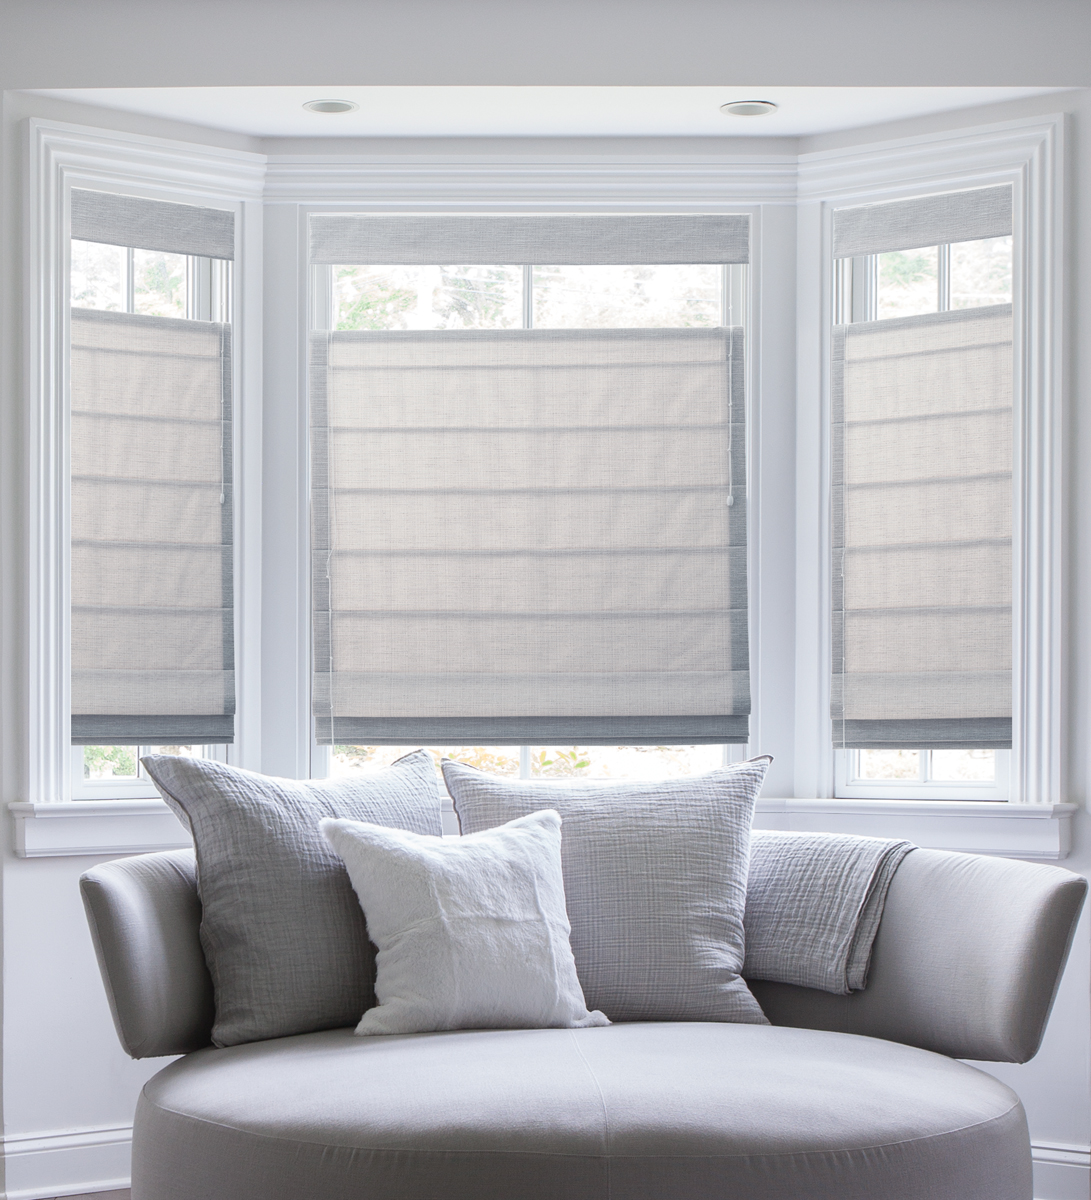 Rèm cửa còn giúp cho không gian nội thất trong ngôi nhà được ấm áp, sang trọng hơn.